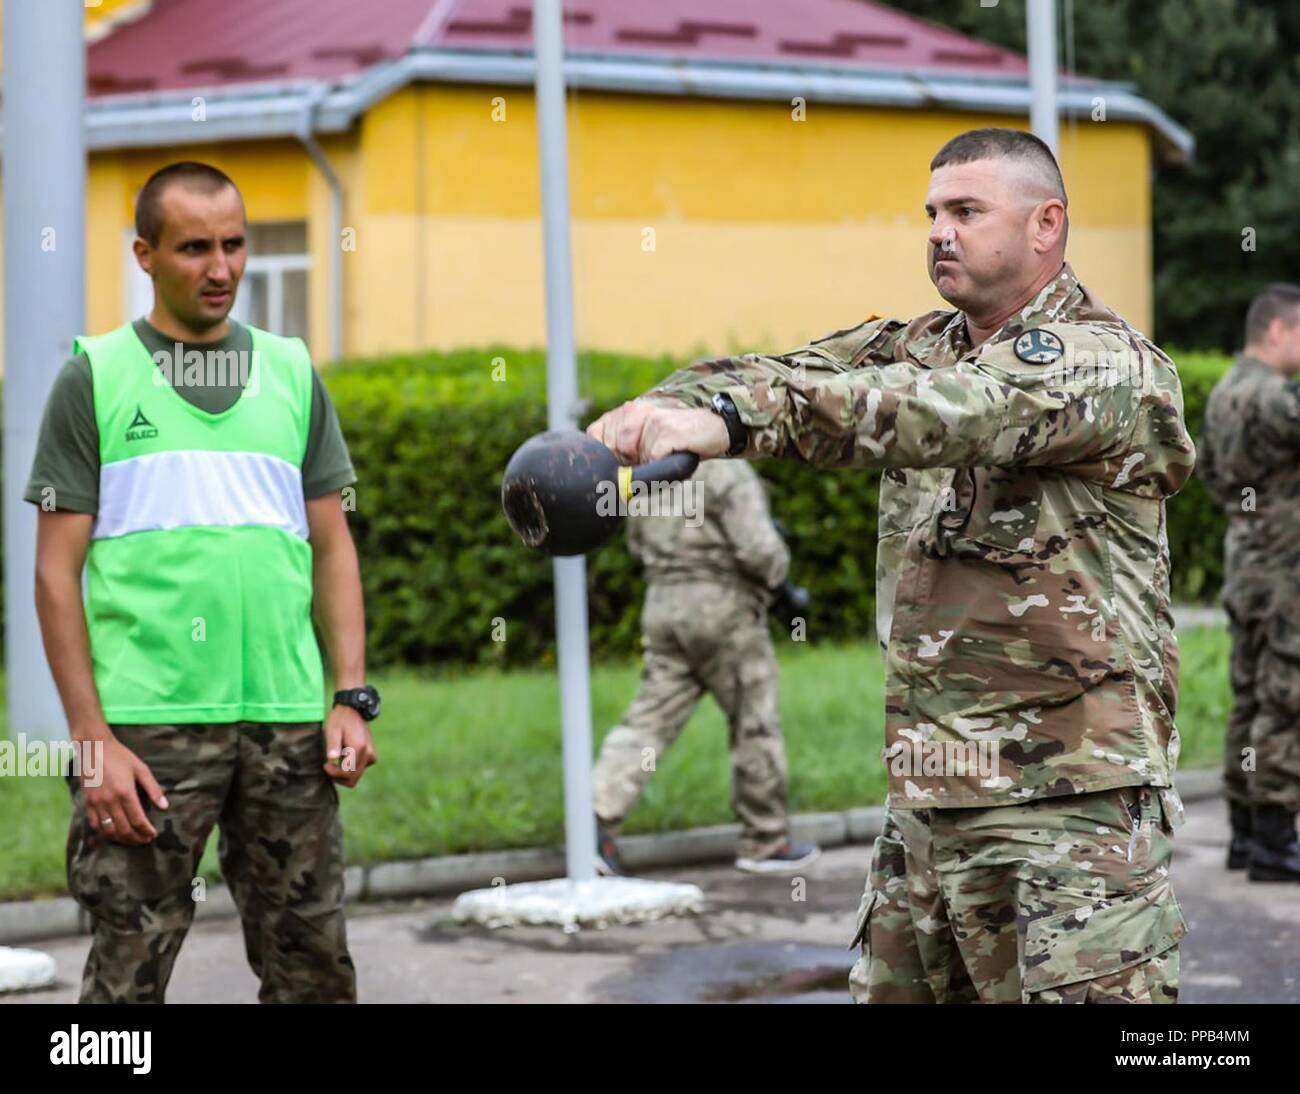 Staff Sgt. Bonner der 278th Armored Cavalry Regiment schwingt einen Wasserkocher Glocke an einem Wettbewerb während der Polnischen Streitkräfte Tag an Yavoriv, Ukraine, 12.08.15. Stockfoto